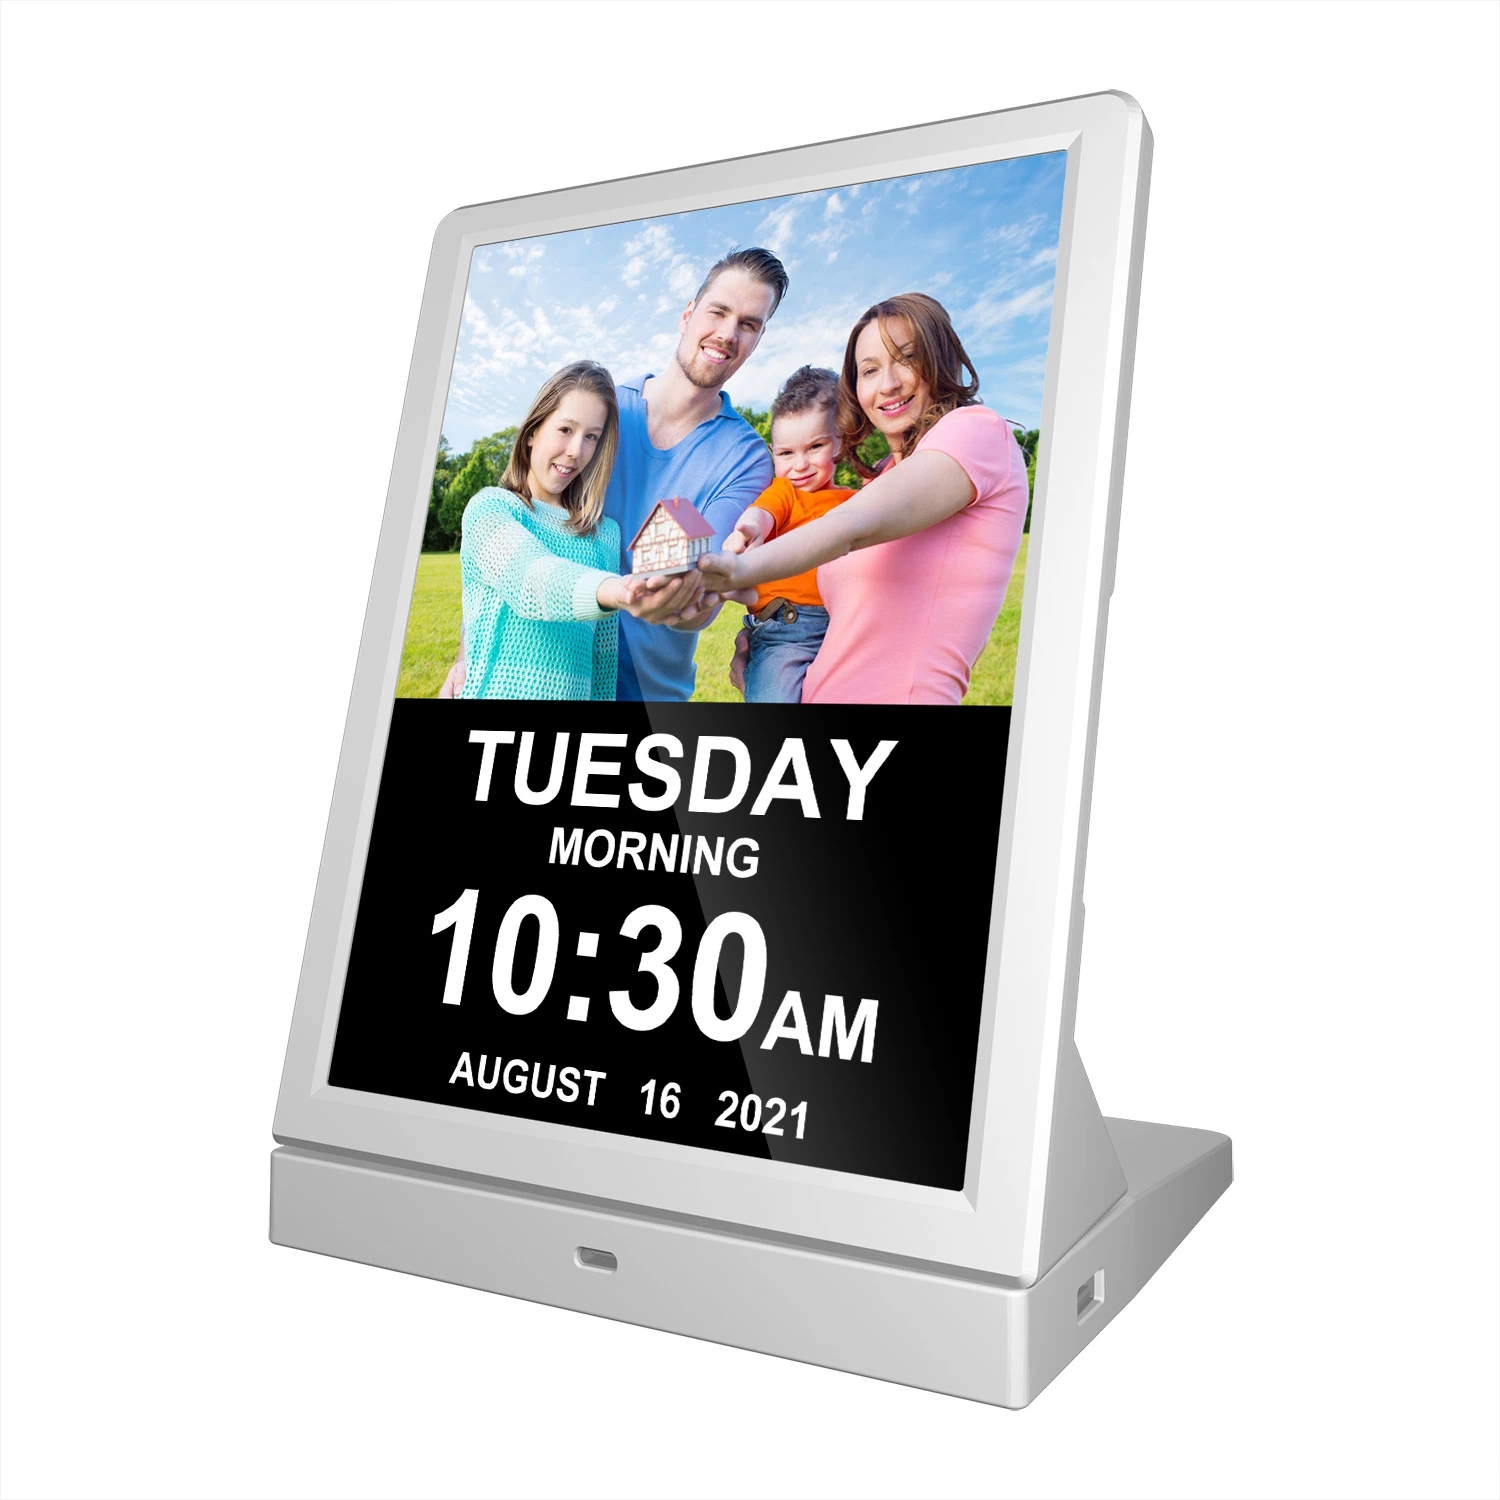 الإعلانات إدارة النظام Cloud Server شاشة LCD رقمية مقاس 9.7 بوصات إطار الصور